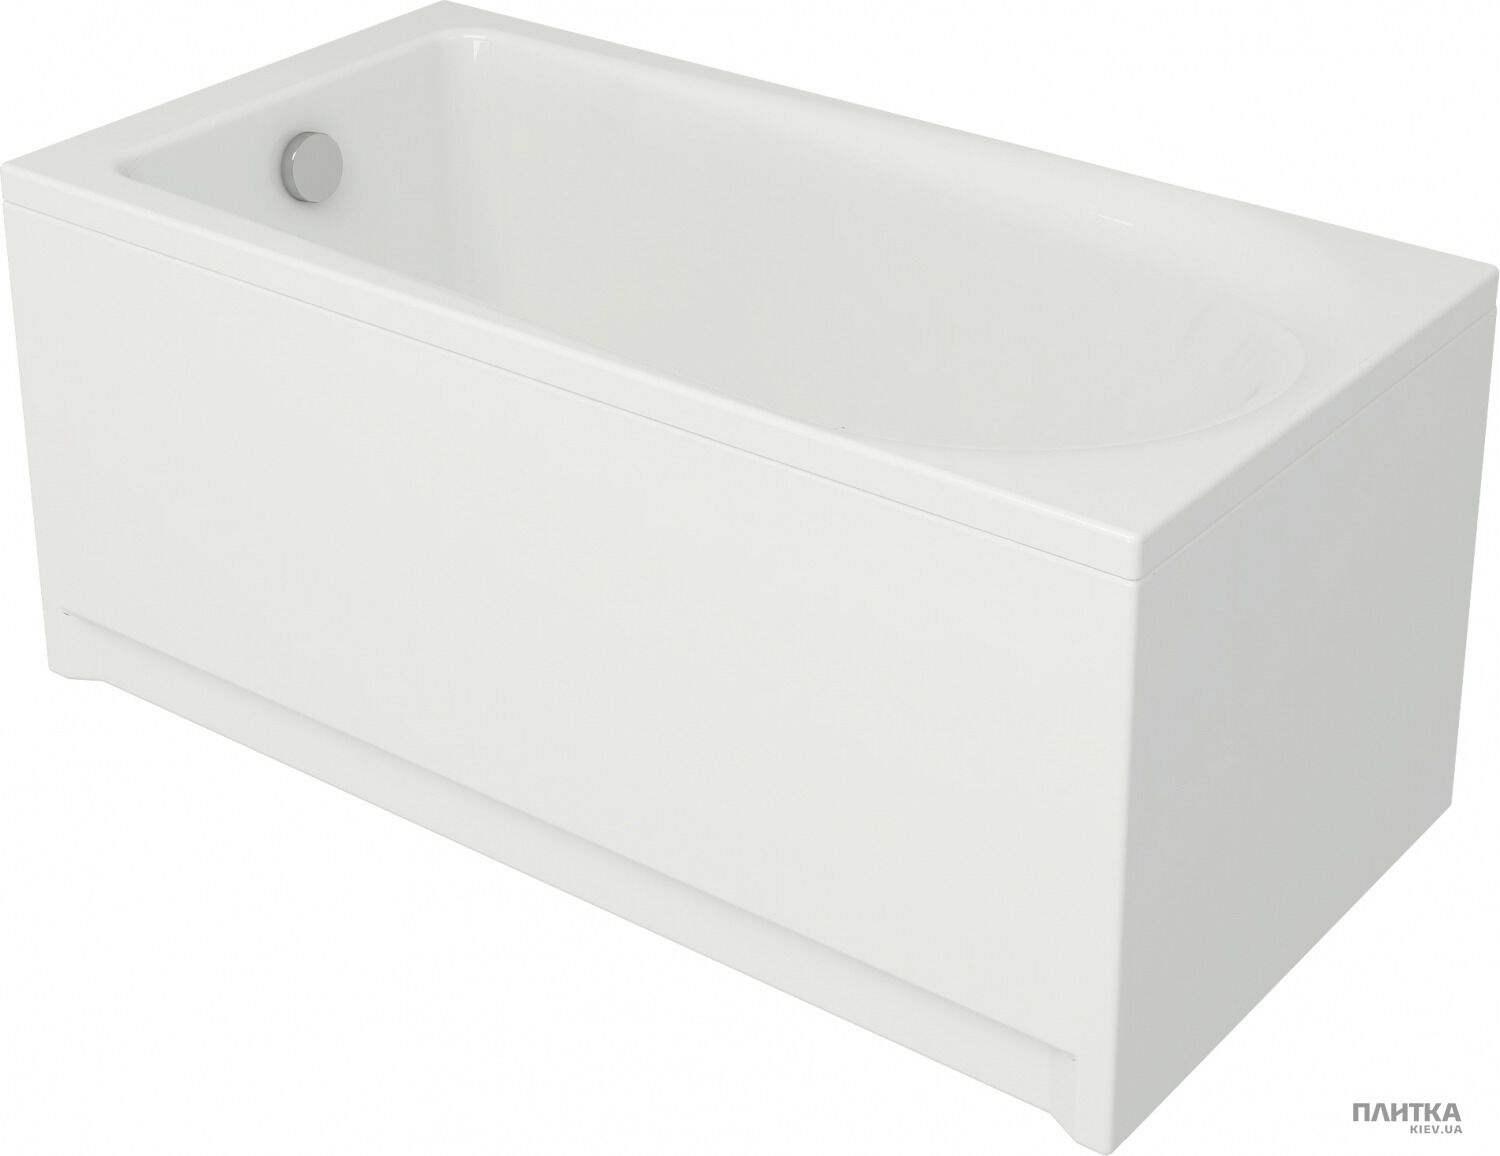 Акриловая ванна Cersanit Flavia 150x70 см белый